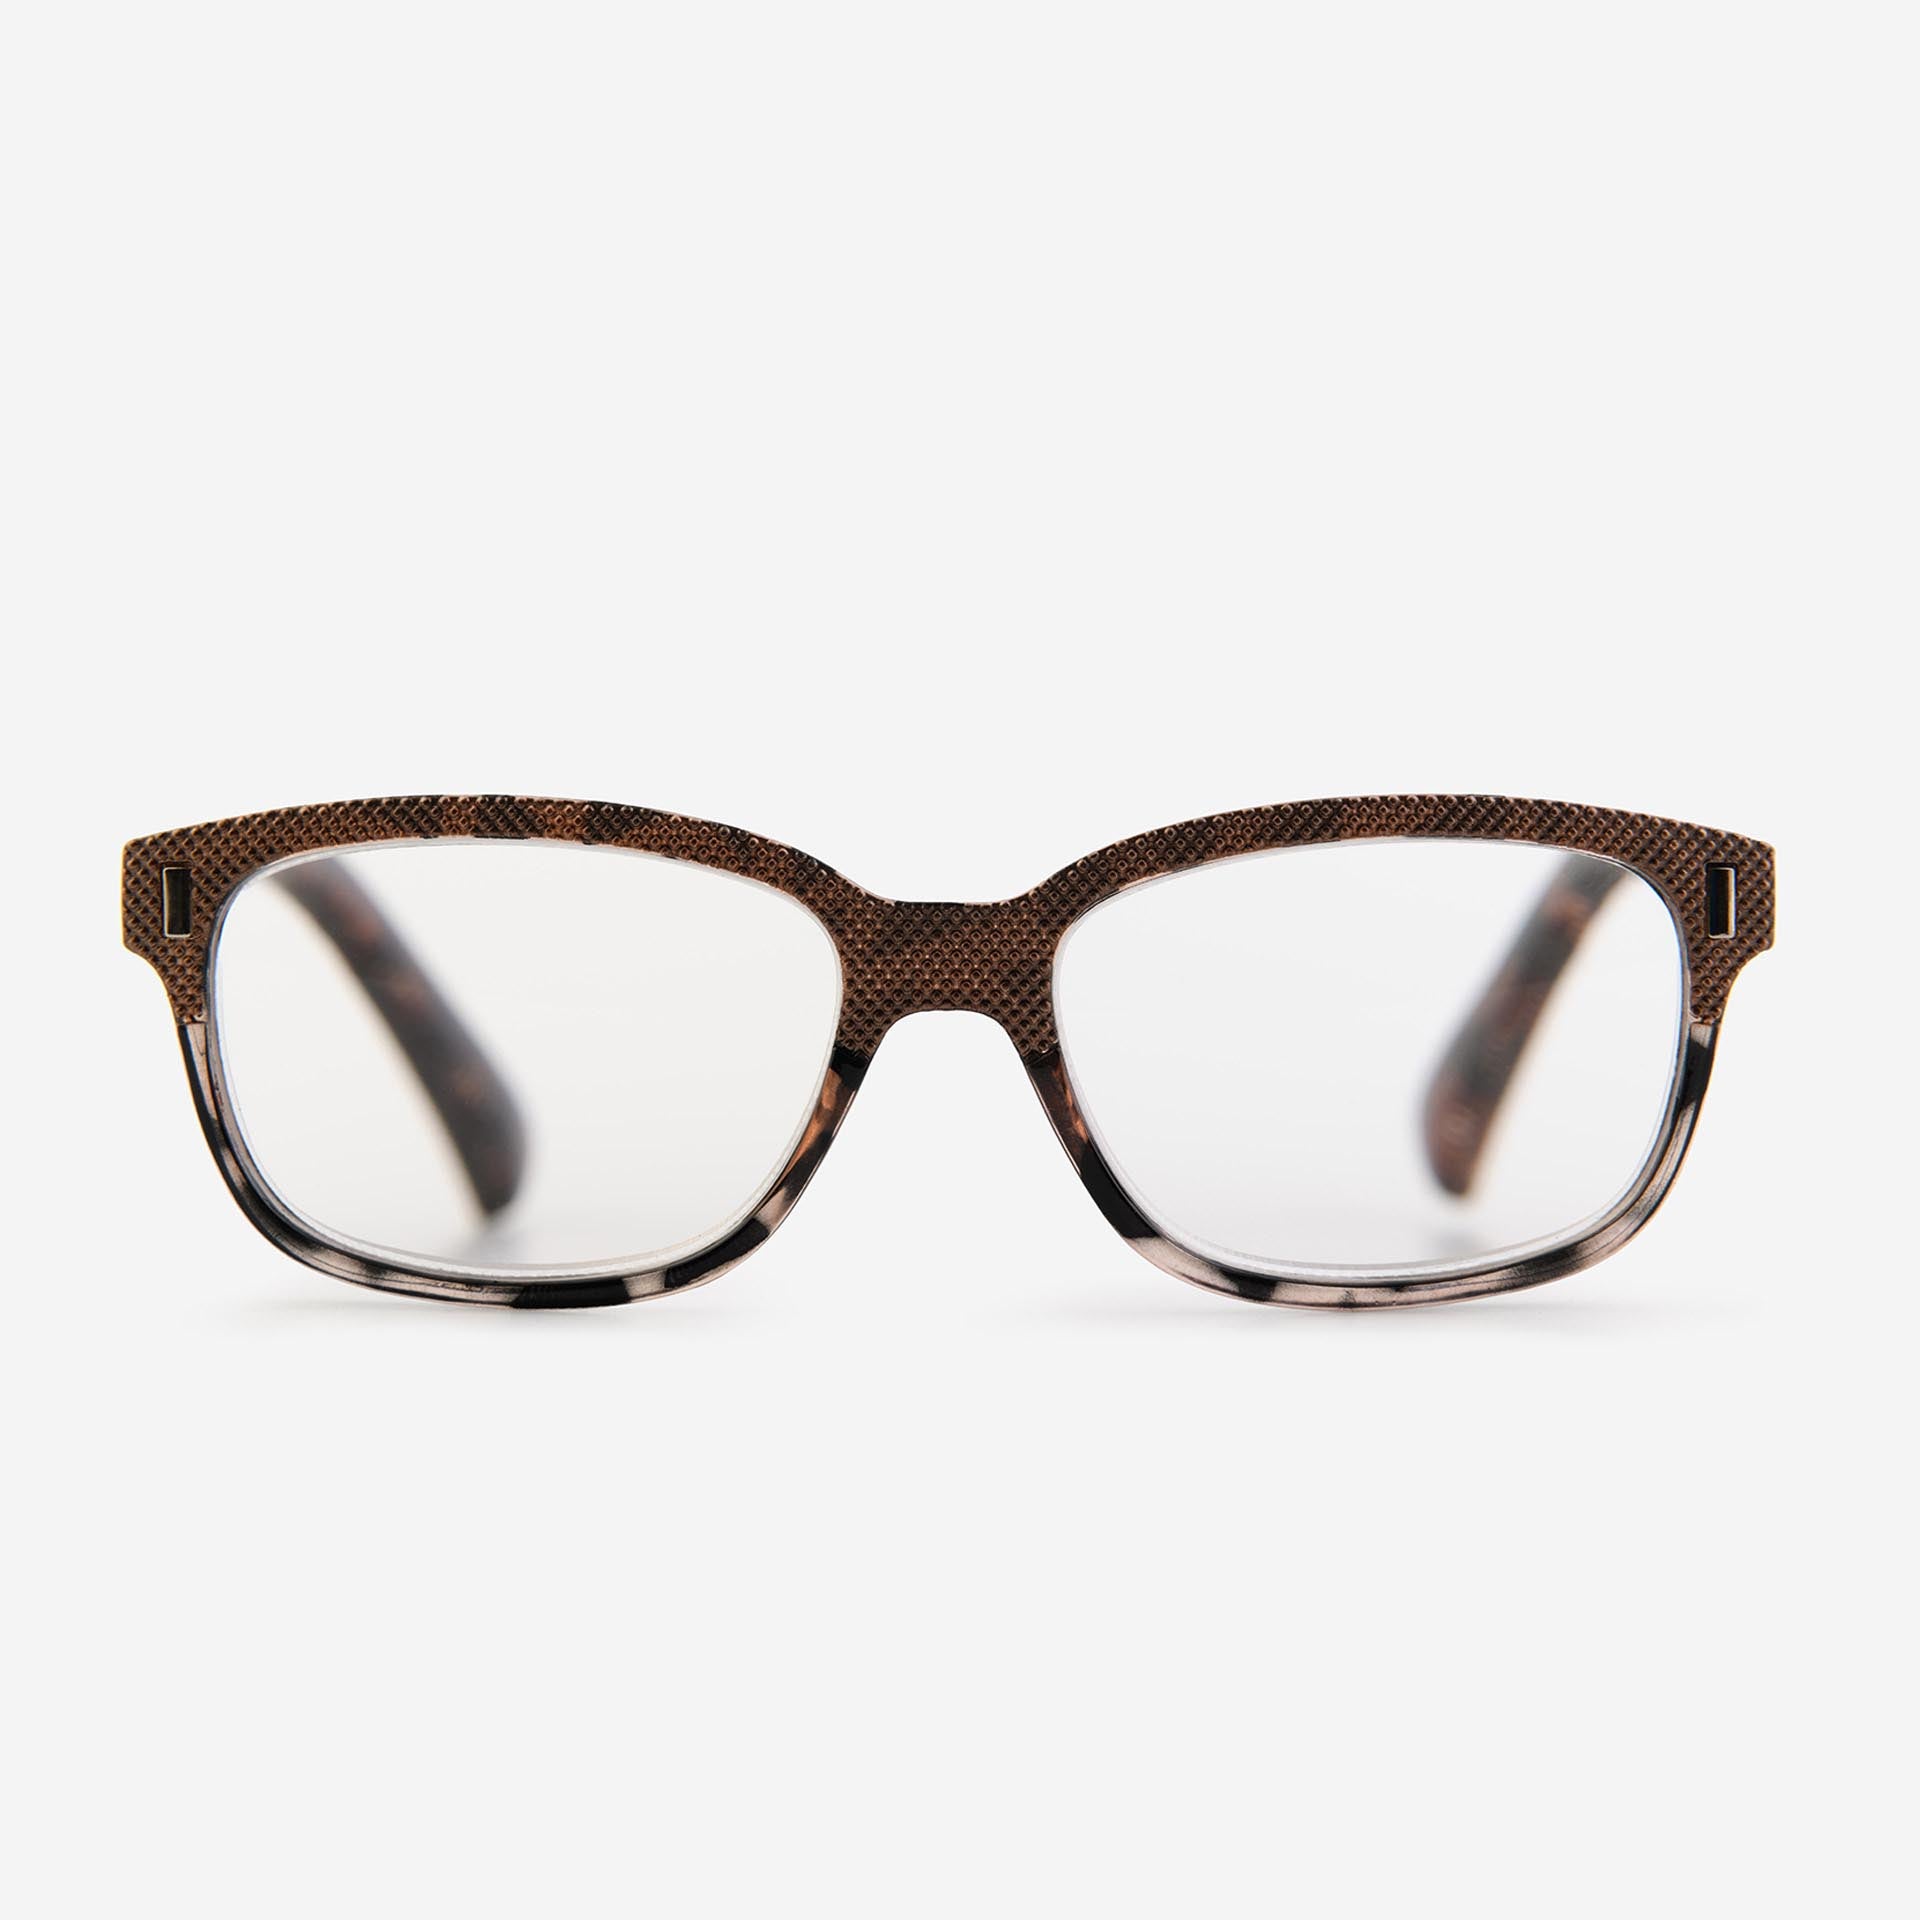 Brown tortoiseshell wayfarer reading glasses